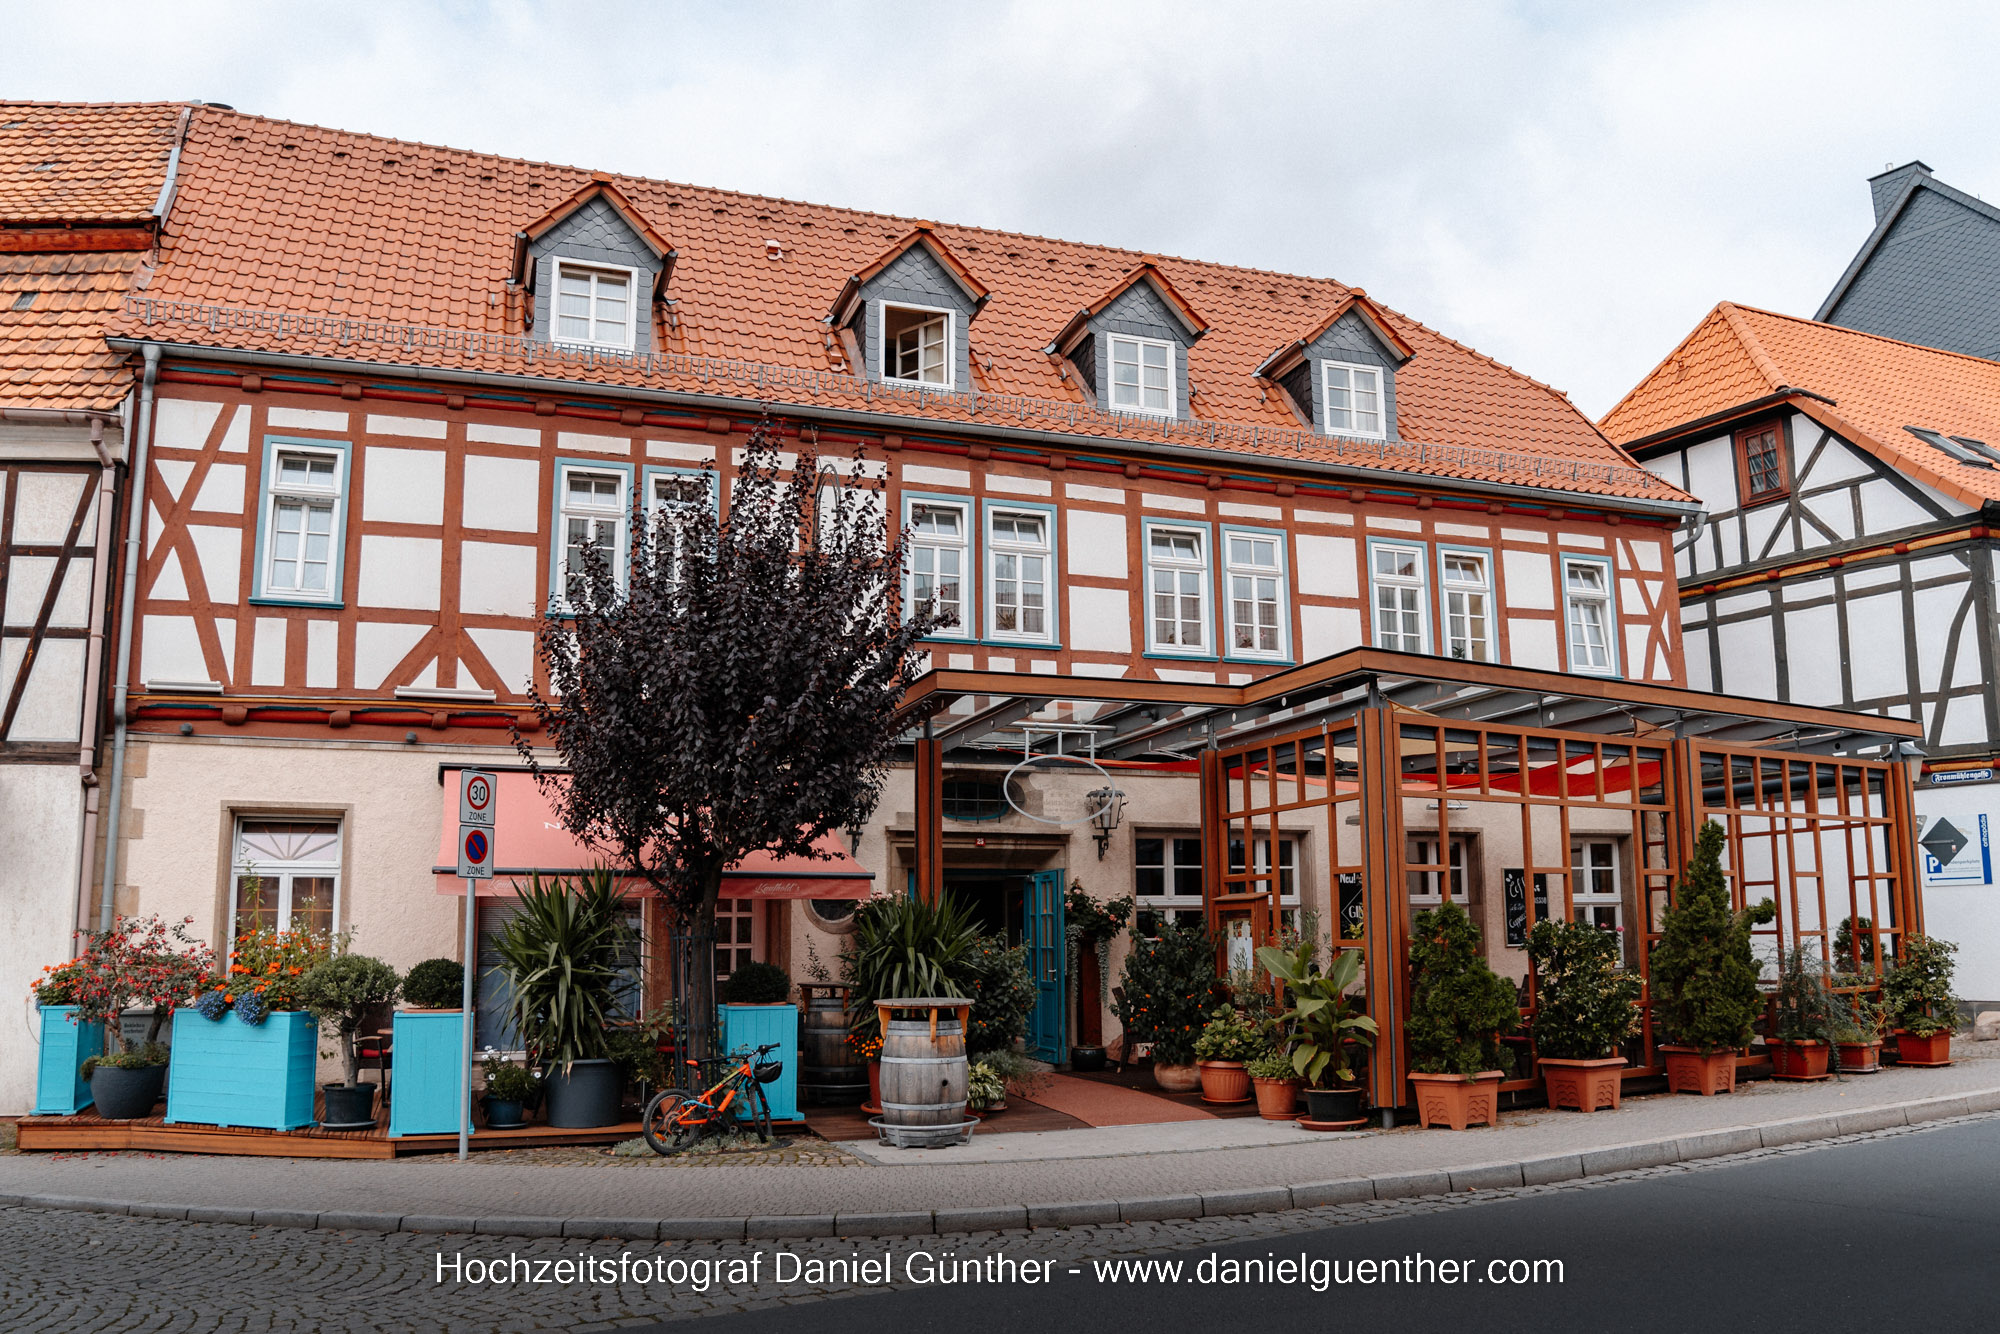 Hotel Norddeutscher Bund Heilbad Heiligenstadt Eichsfeld Hochzeitsfeier Trauung Fotograf